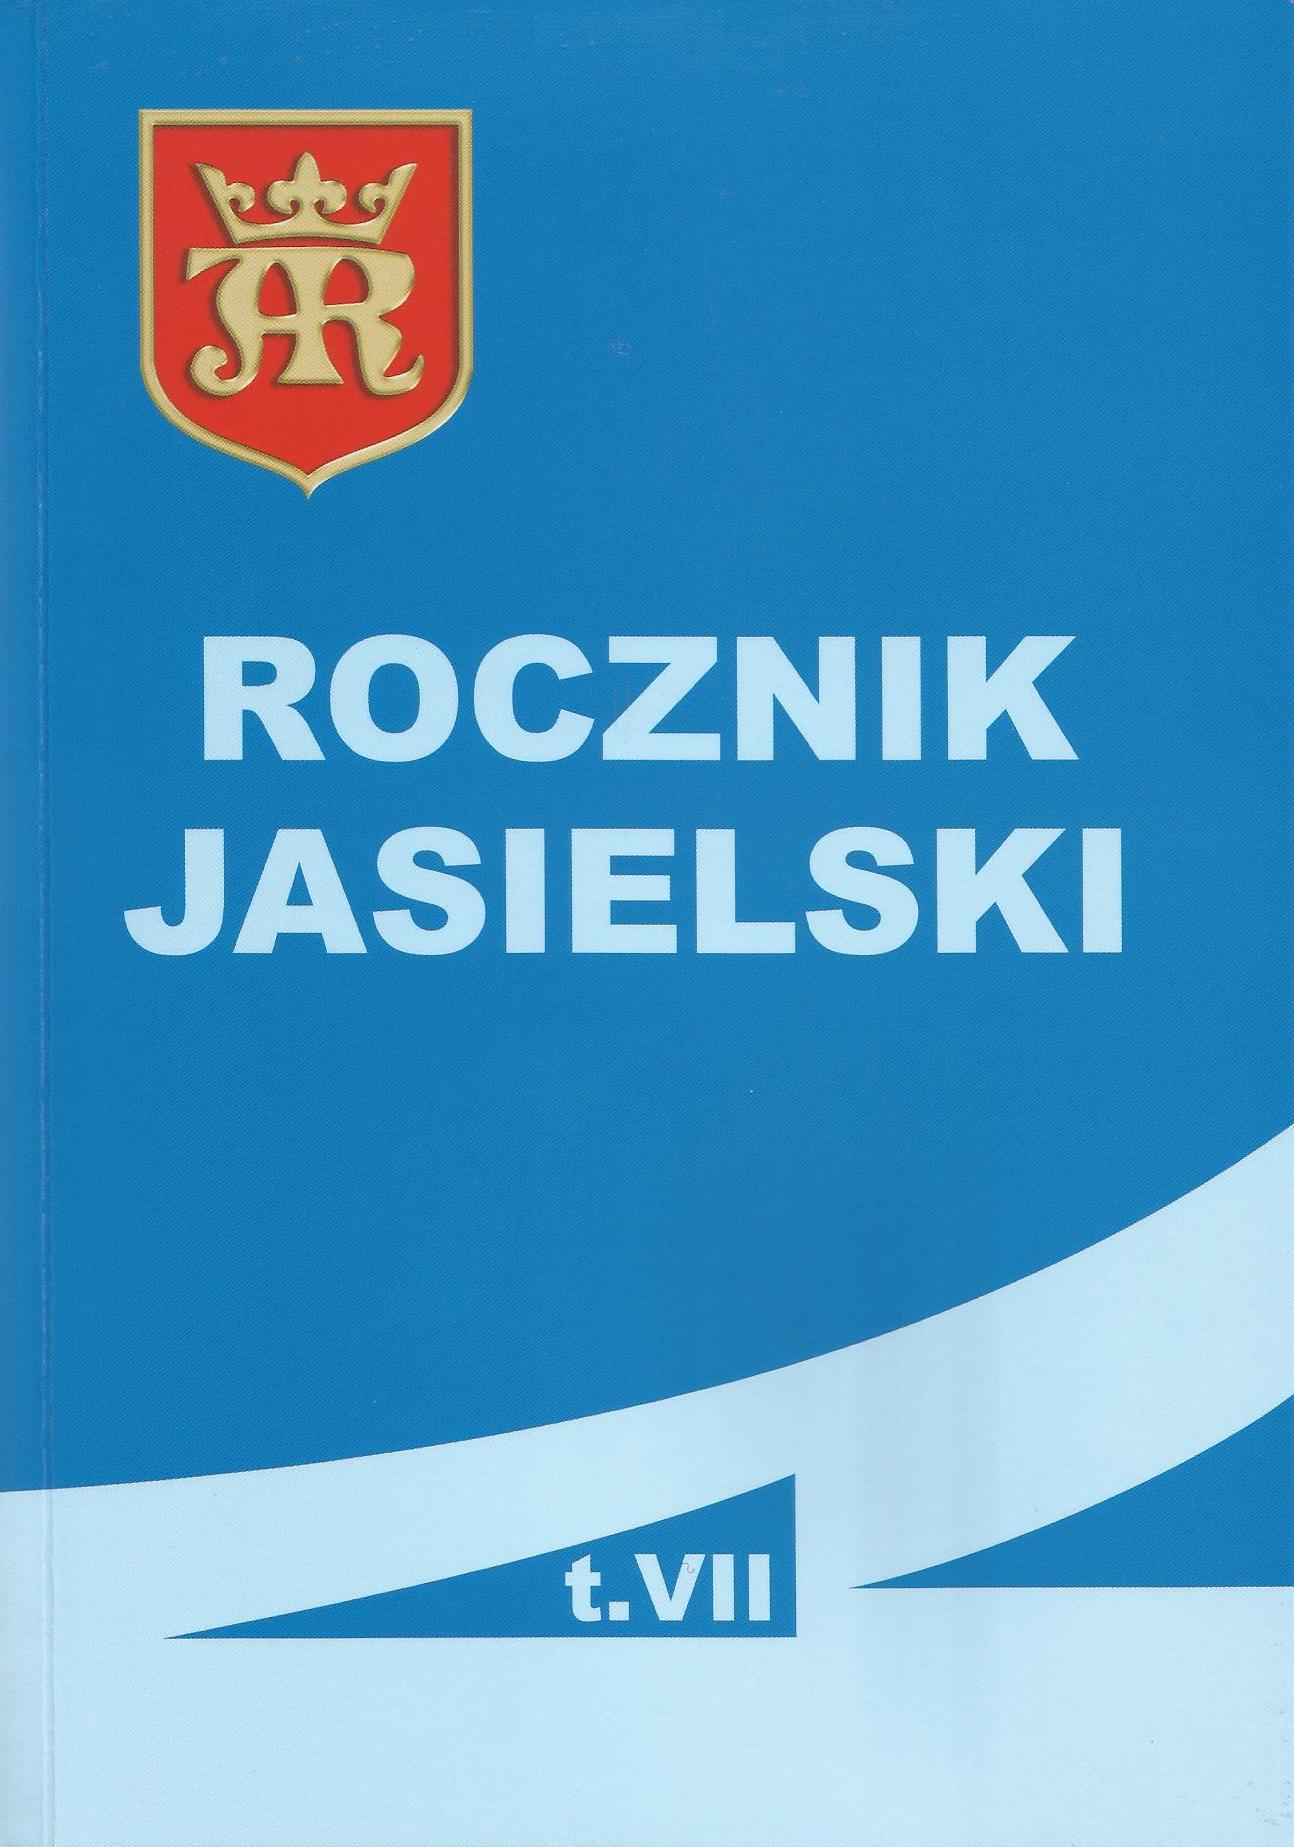 Rocznik jasielski